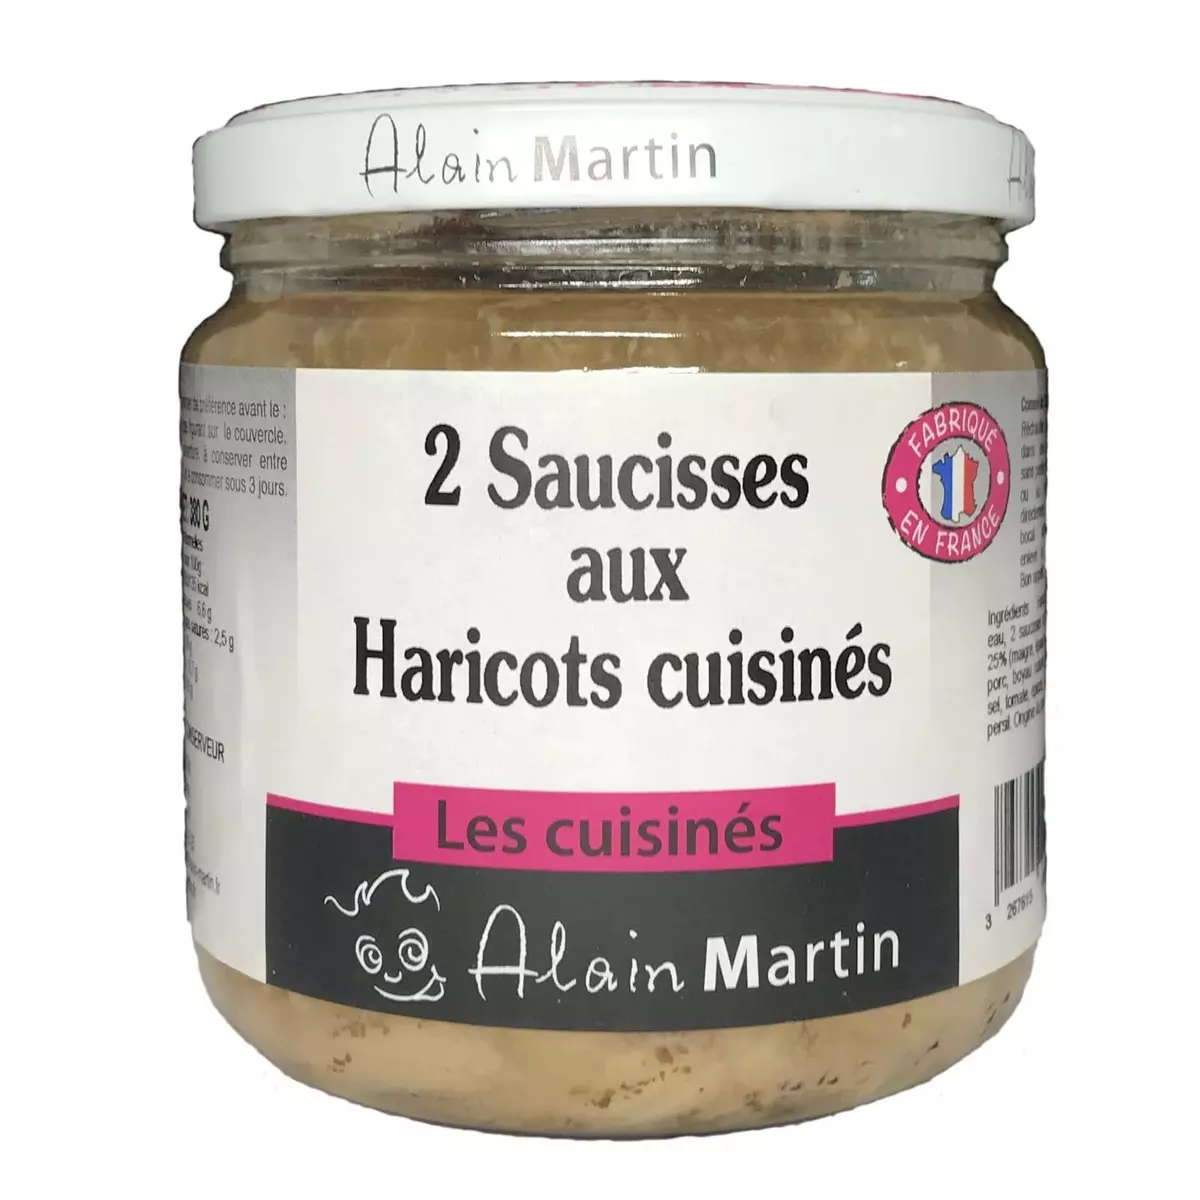 ALAIN MARTIN 2 Saucisses aux haricots cuisinées en bocal 380g